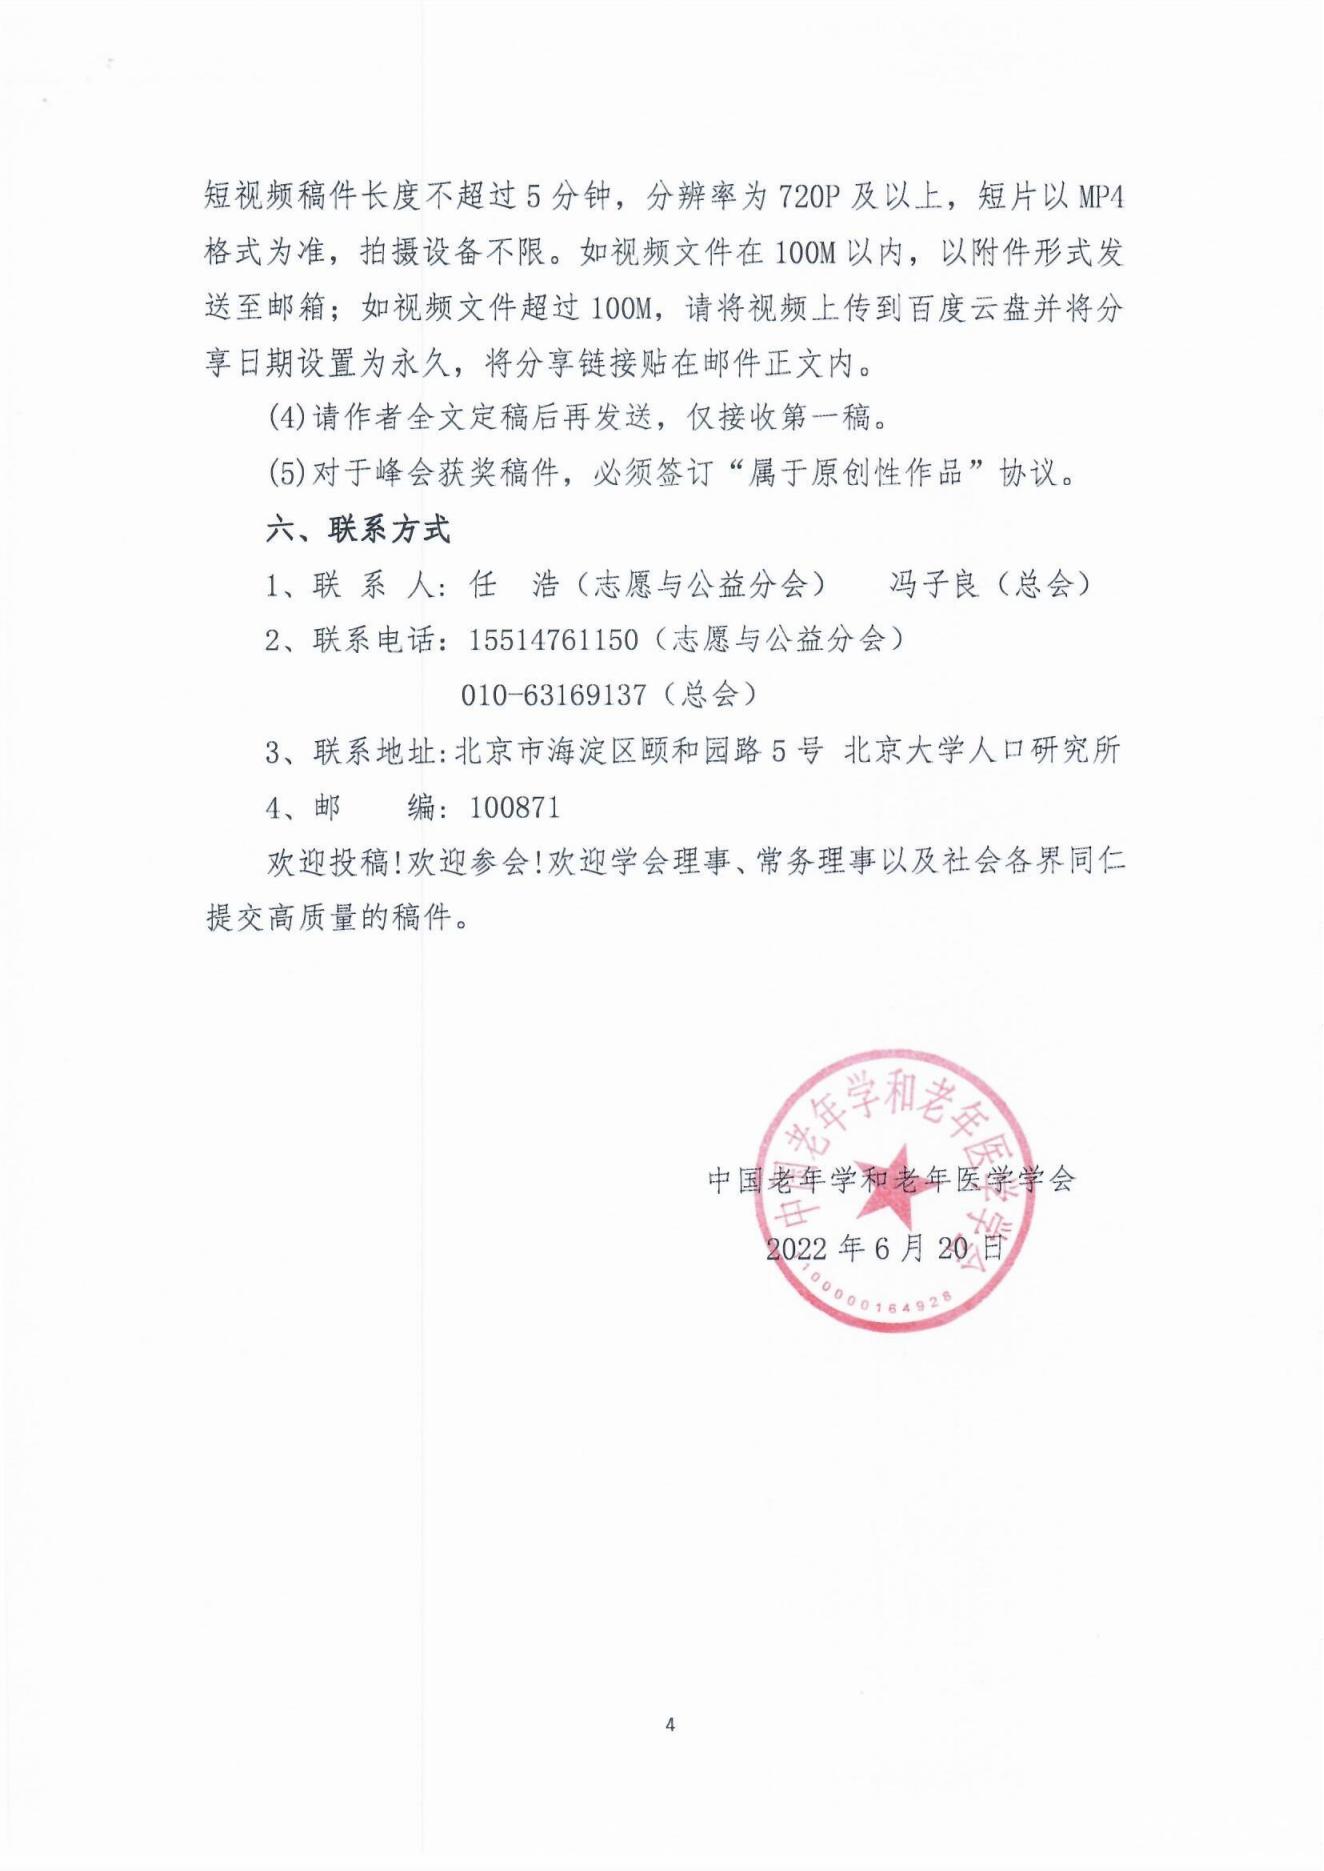 2022年首届中国老龄志愿与公益服务高峰论坛论文征集通知(1)_03.jpg